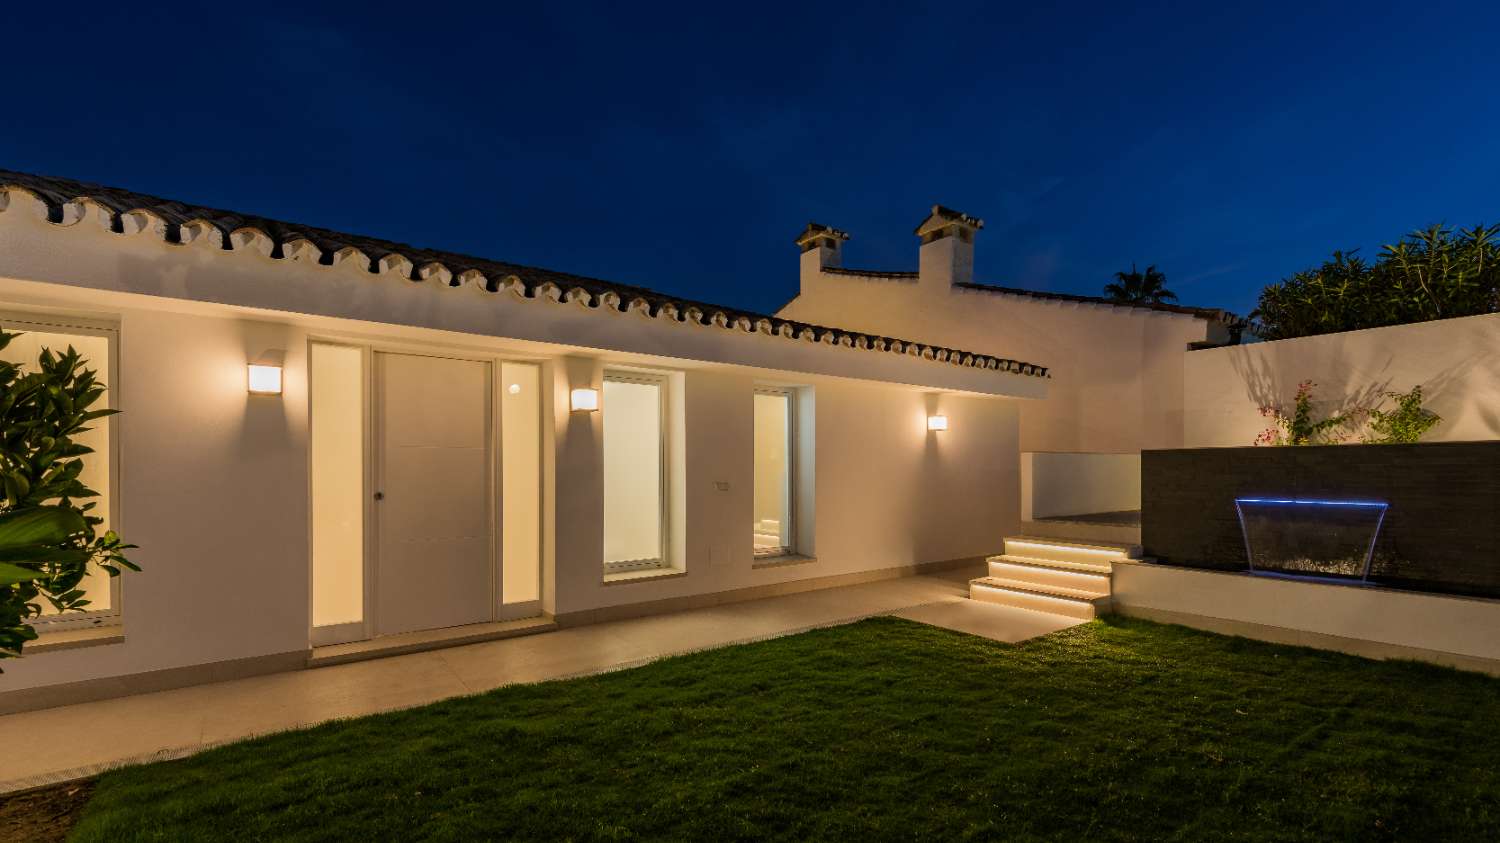 Prachtige gerenoveerde villa met uitzicht op zee naast het strand in Estepona